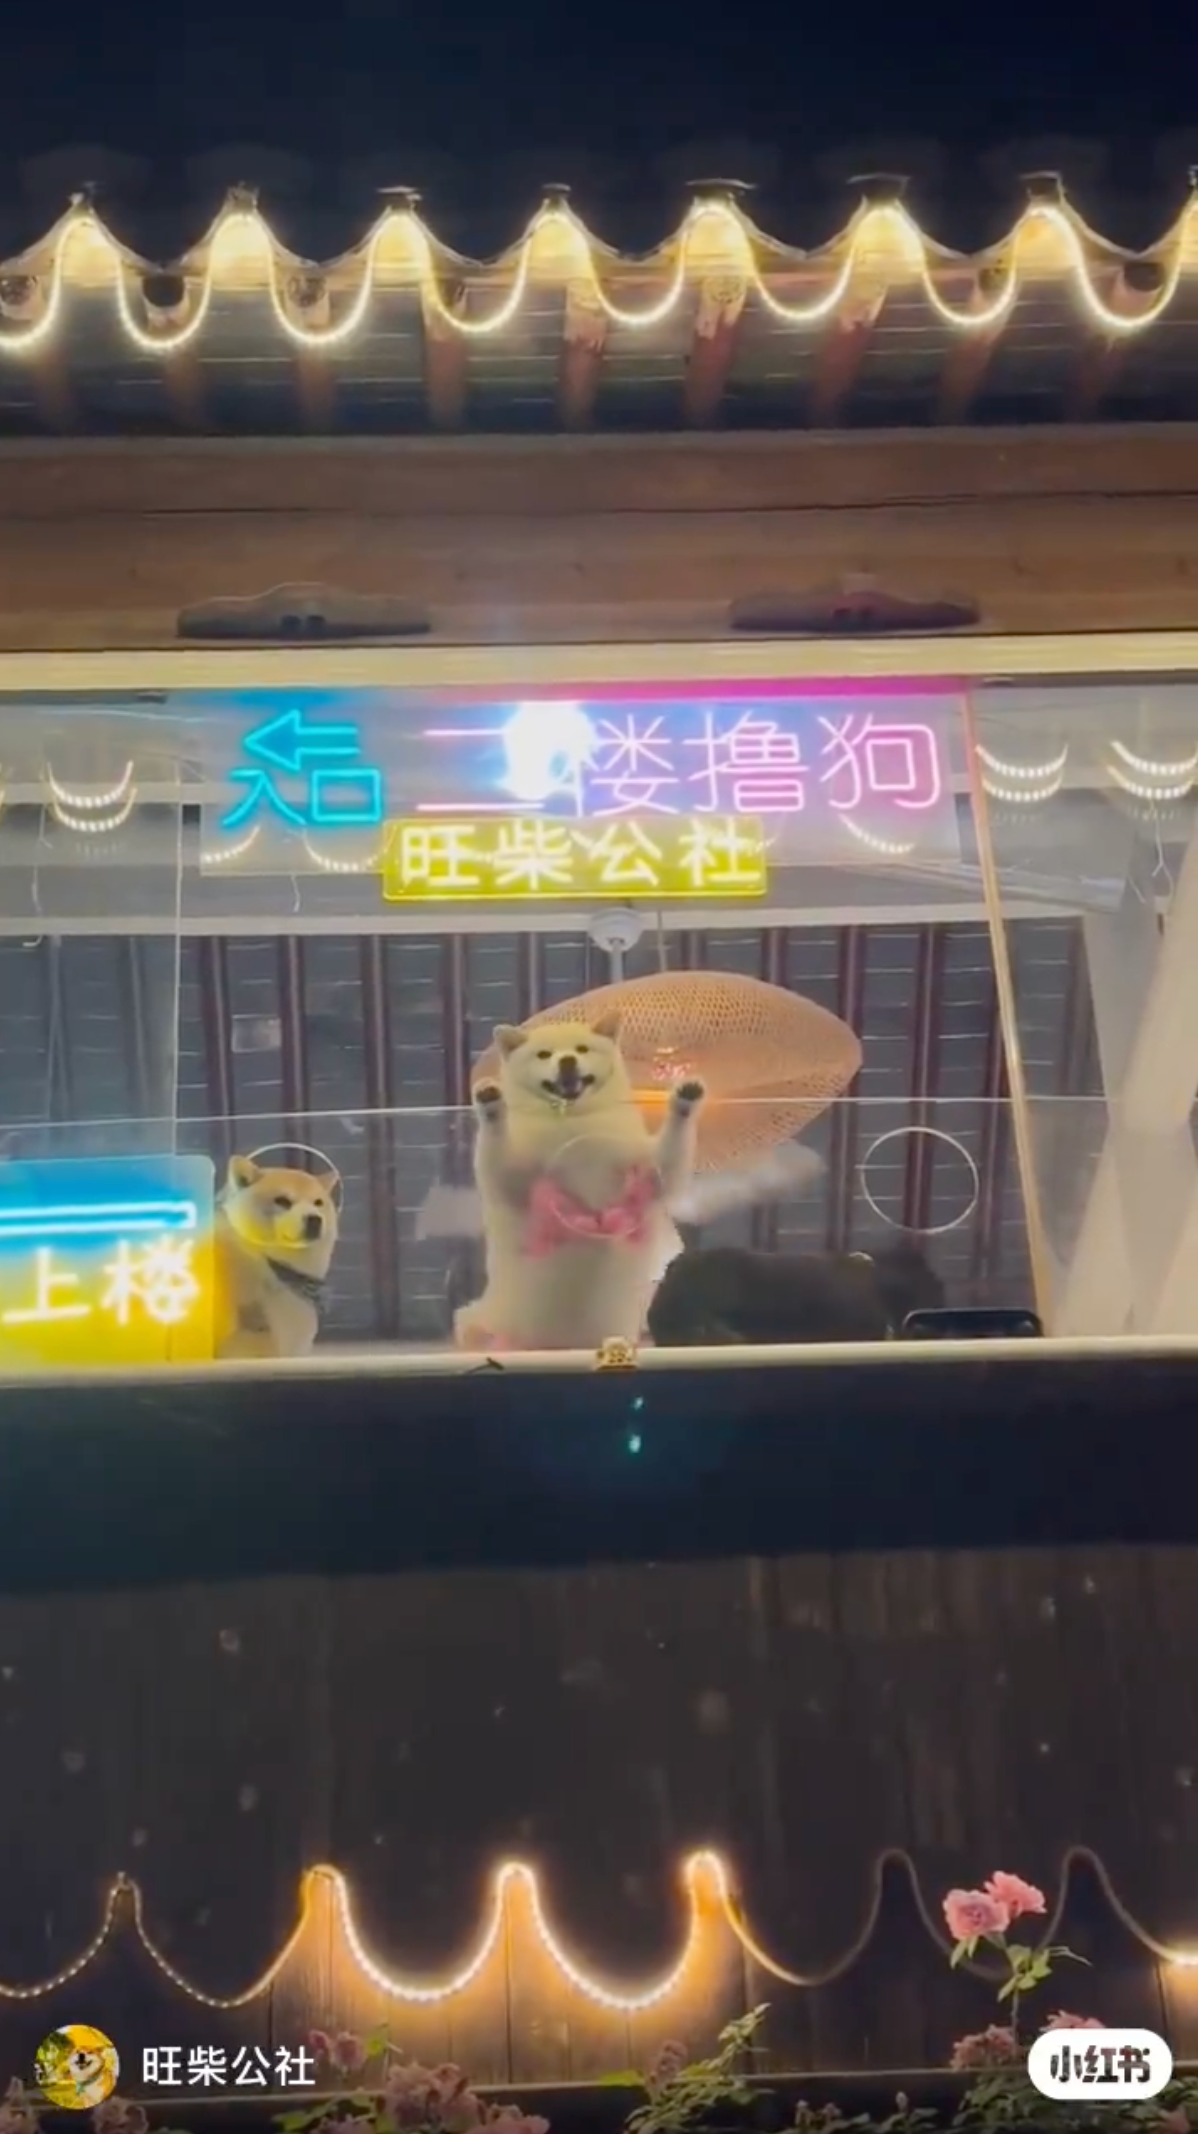 คลิปวิดีโอน้องหมาในคาเฟ่ใส่ชุดสุดแซ่บเต้นดุ๊กดิ๊ก